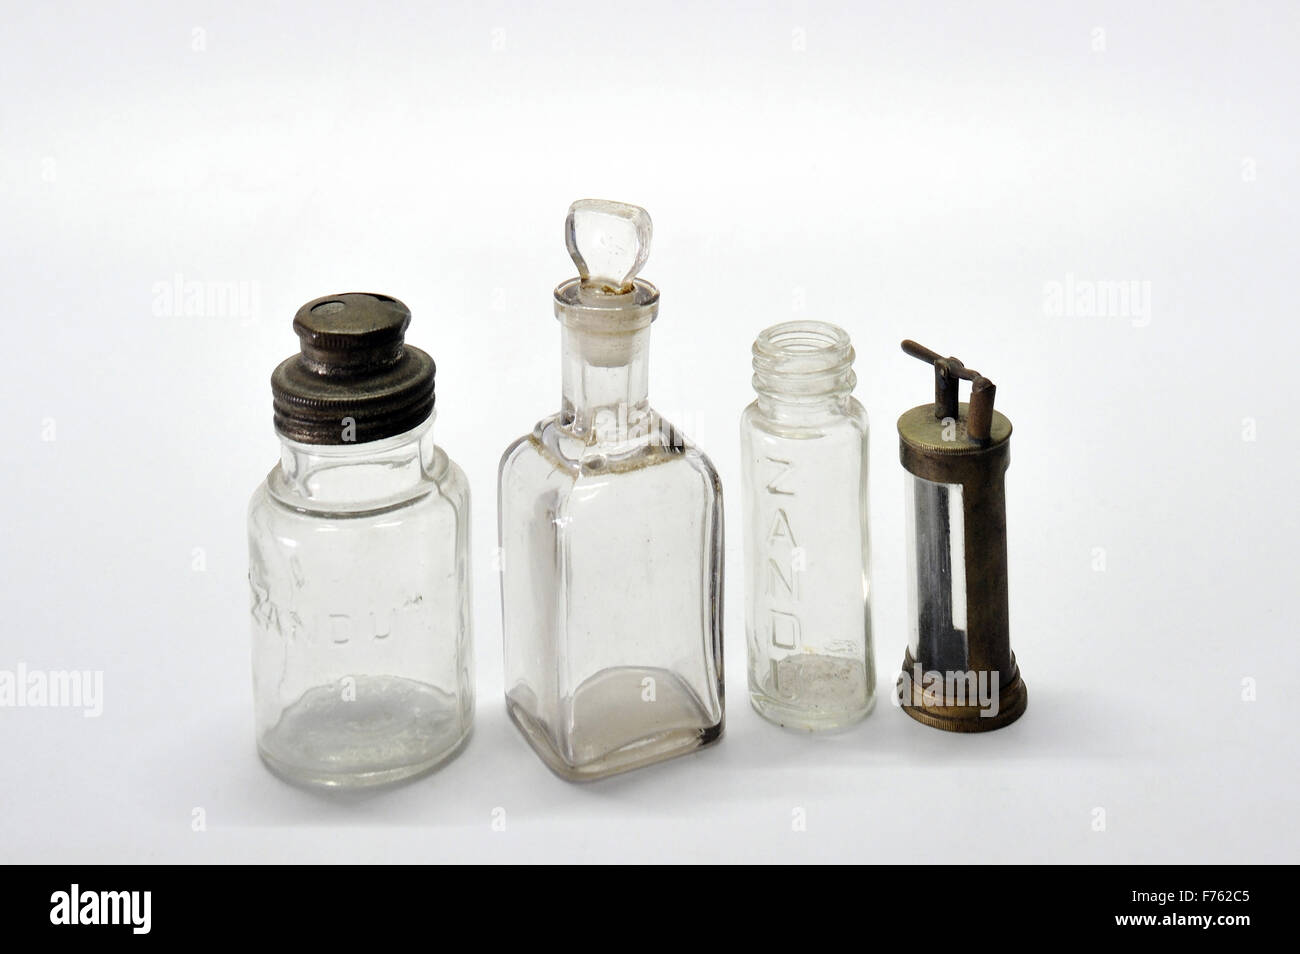 glass bottles, old bottles, antique bottles, vintage bottles, medicine bottles, zandu medicine glass bottles Stock Photo